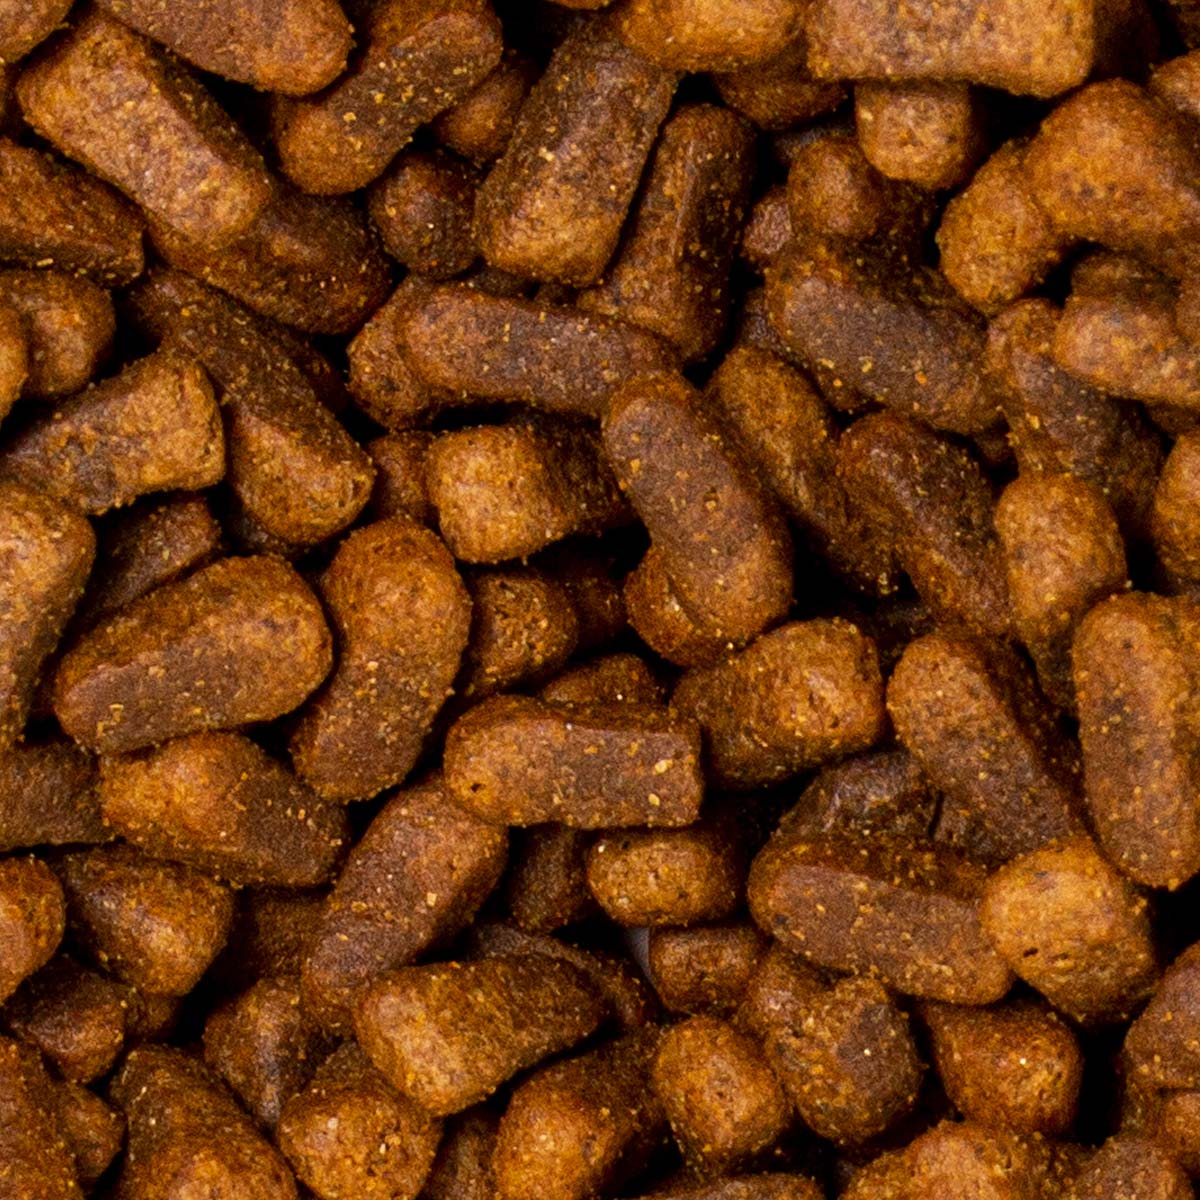 Deuka Schonkost Mangime per cani sensibili con anatra e patate senza cereali 5 Kg